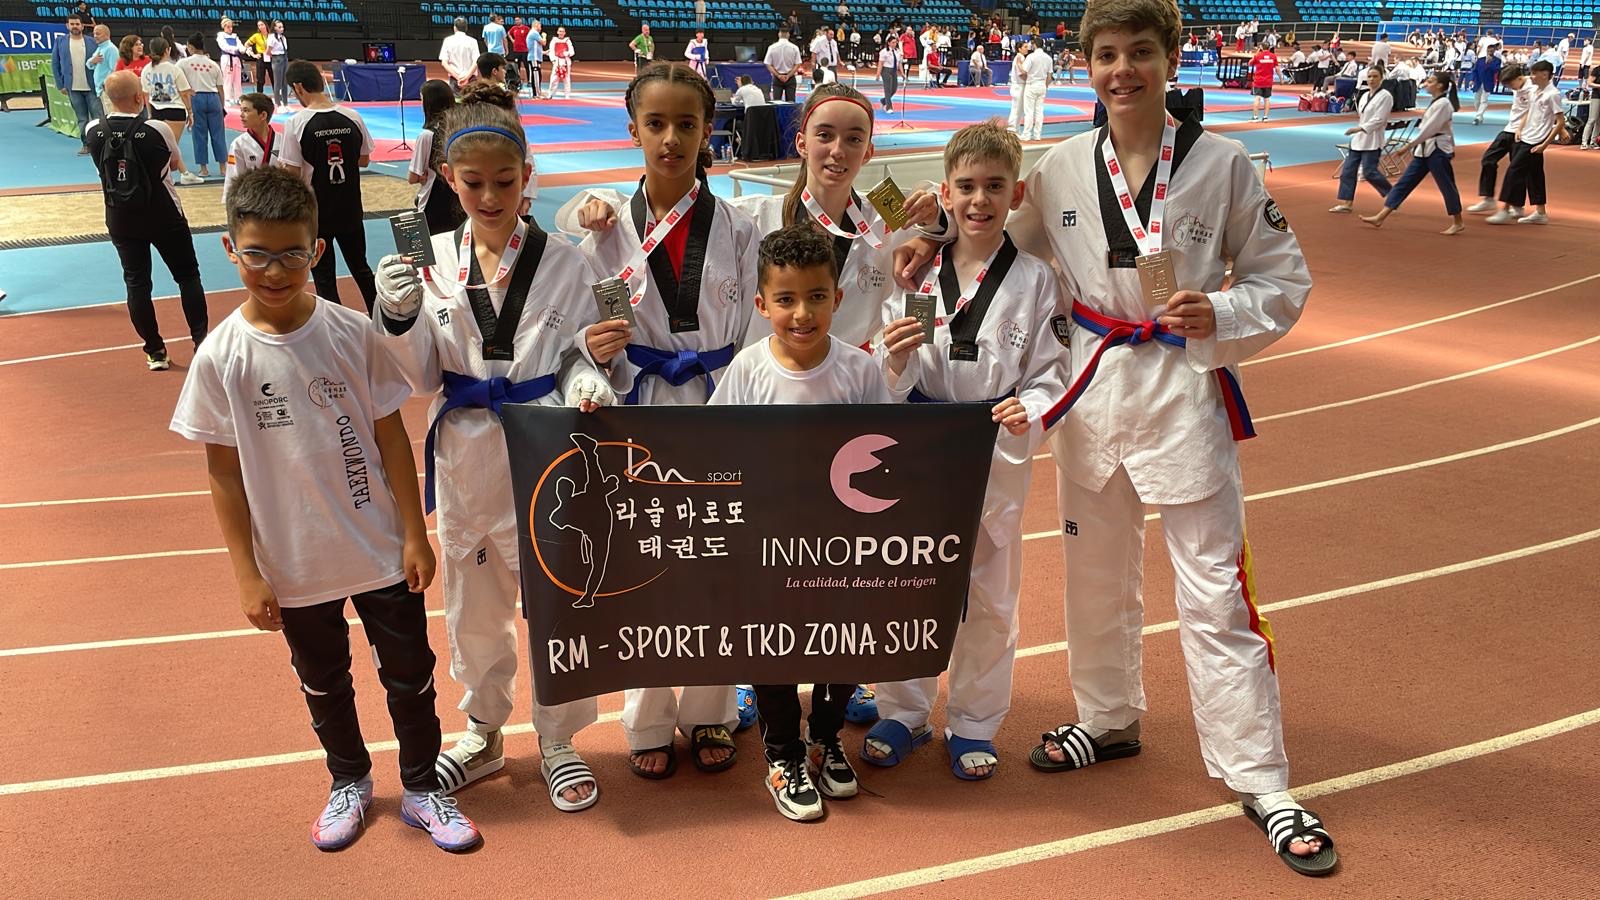 CD Taekwondo RM-Sport Innoporc: Imparable en el Open Nacional “Villa de Madrid”